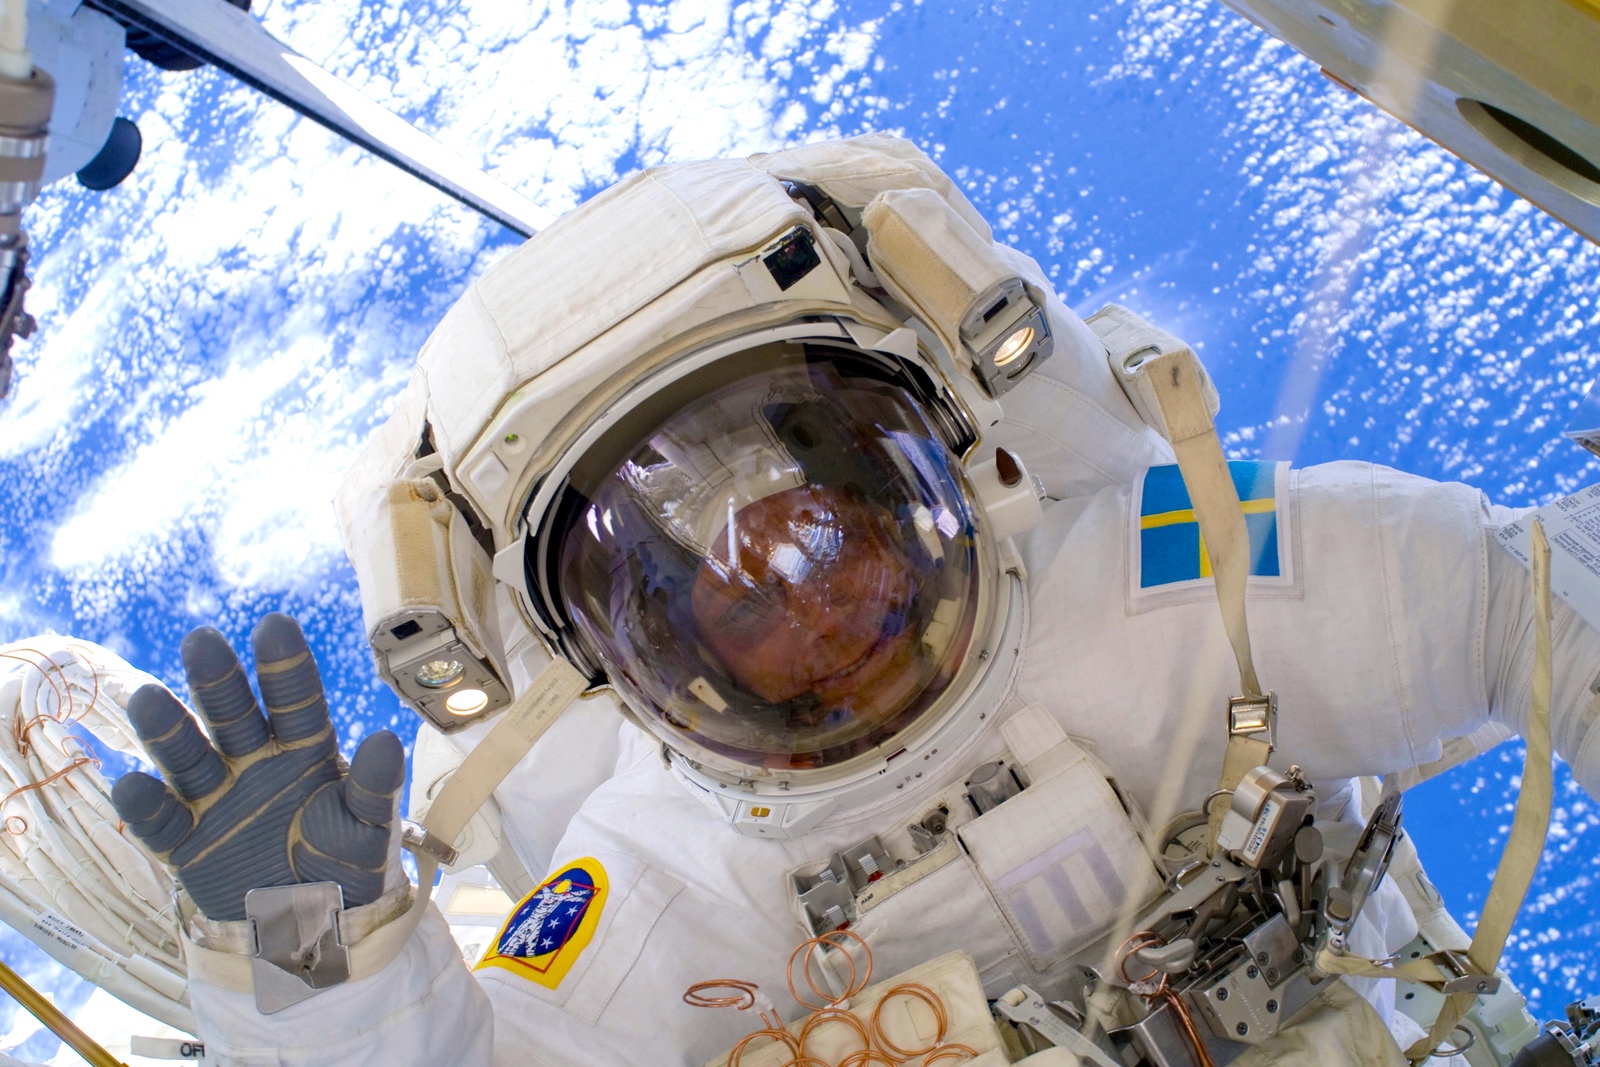 İsveçli bir astronot, Axiom görevinde Uluslararası Uzay İstasyonuna uçuyor